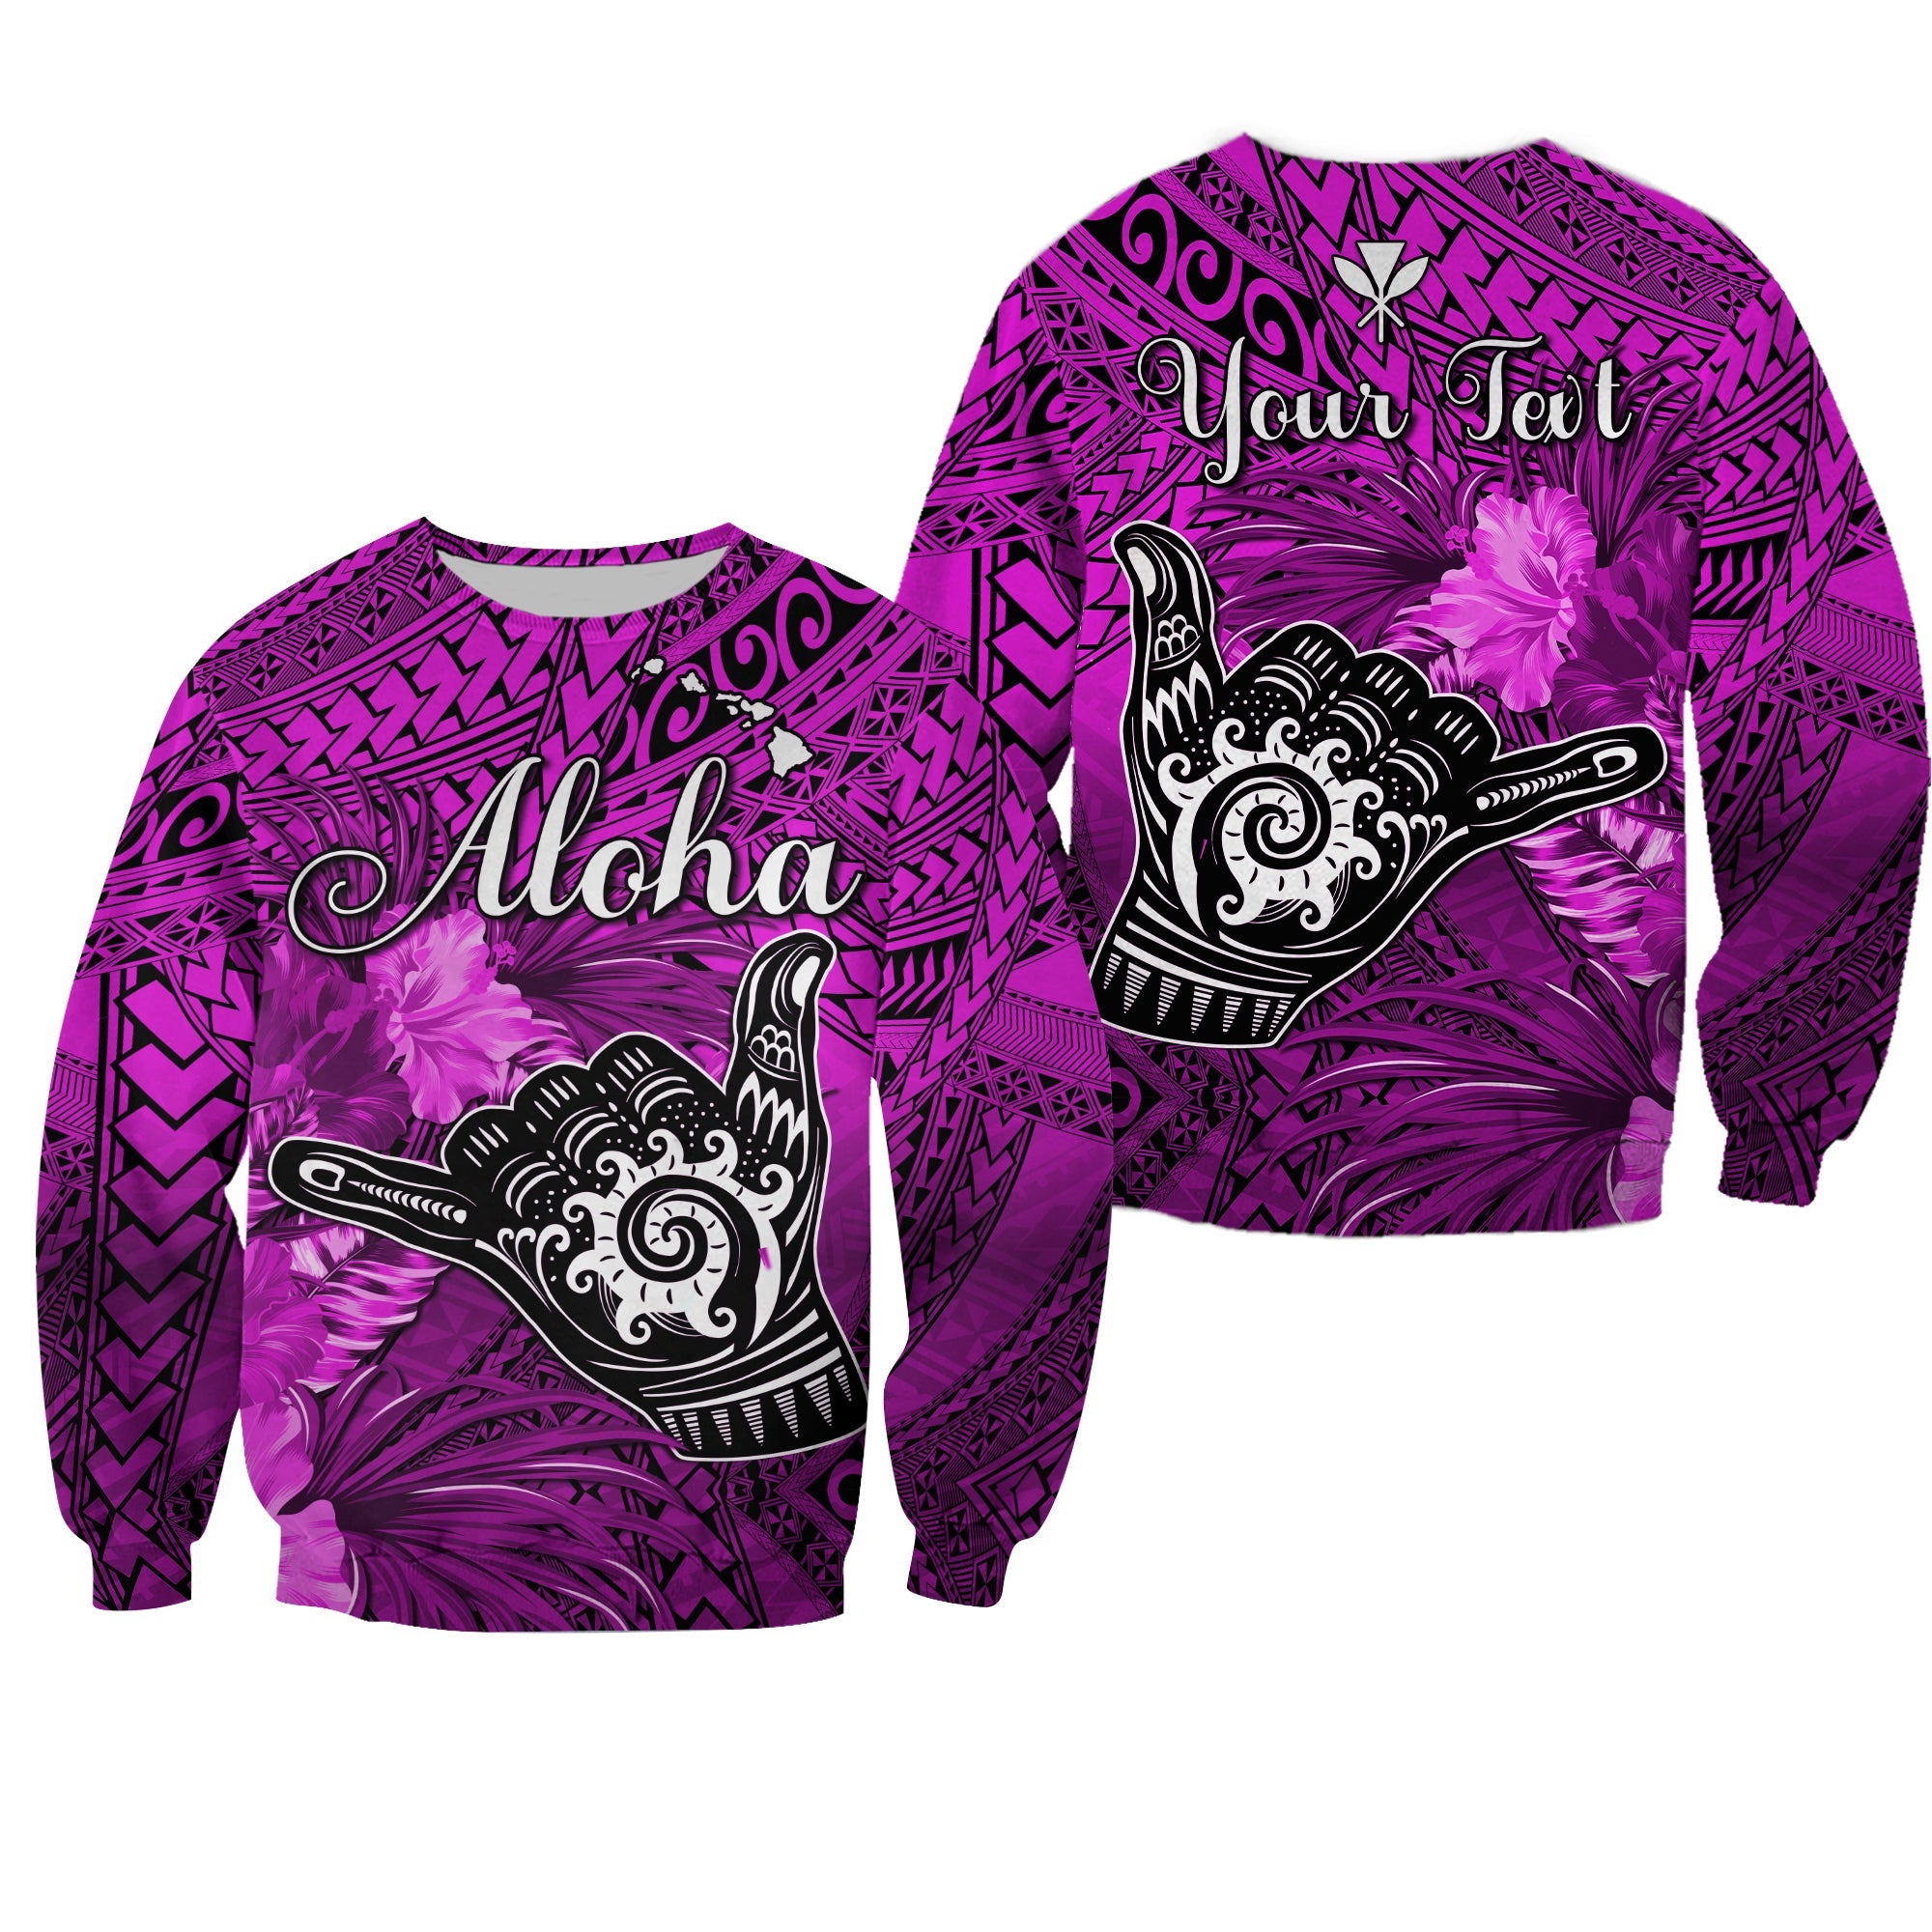 (Custom Personalised) The Shaka Hawaii Sweatshirt Tropical Flowers Purple Version LT13 Unisex Purple - Polynesian Pride